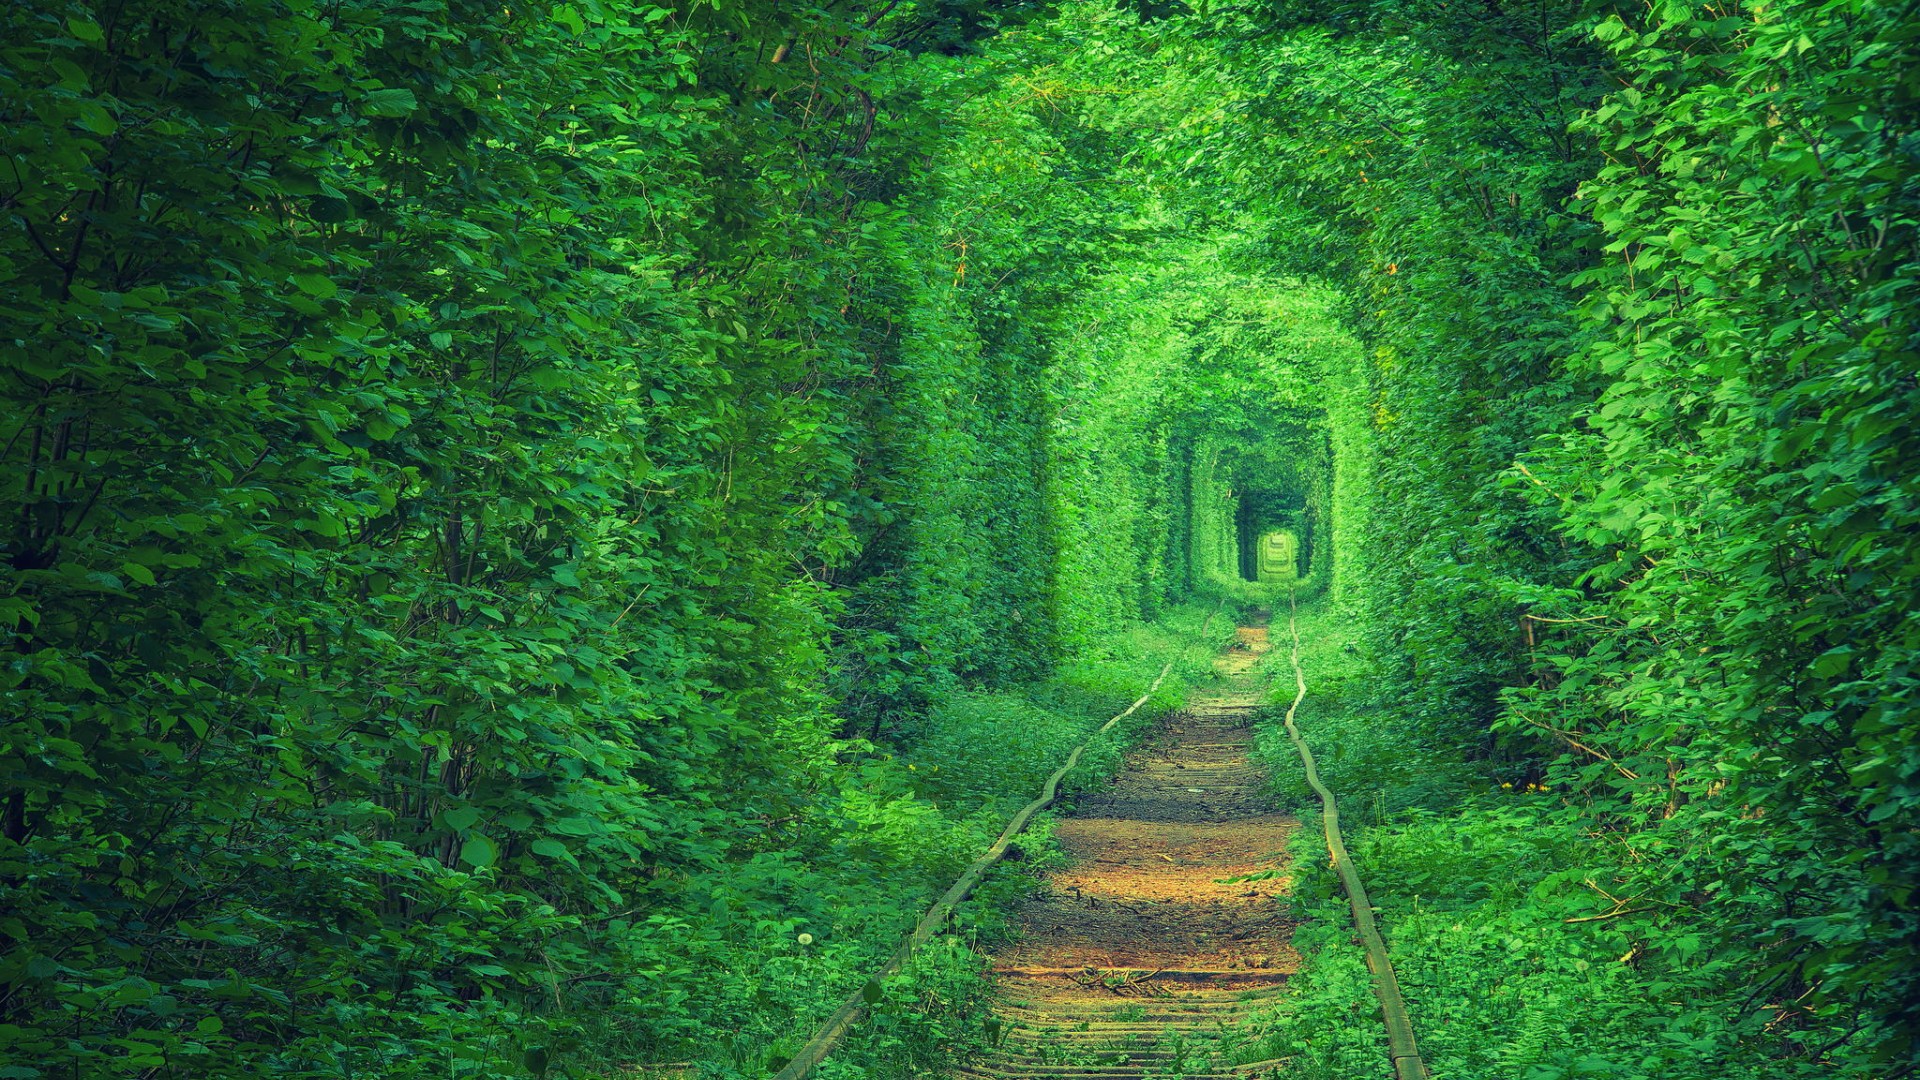 乌克兰废弃的轨道,绿色森林,护眼,浪漫有爱的风景桌面壁纸